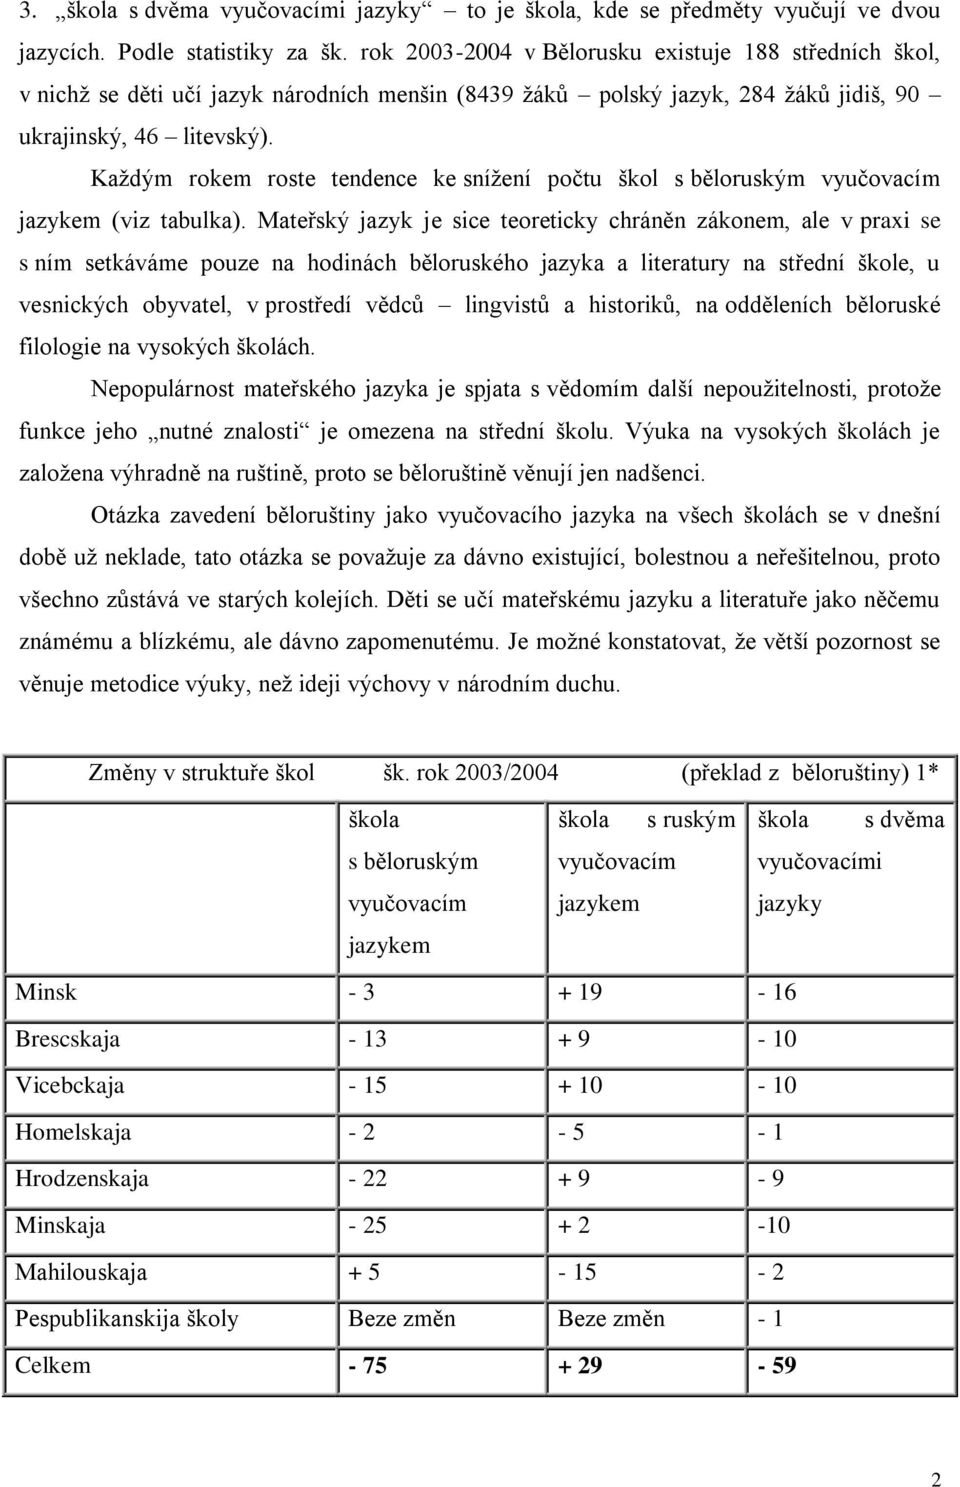 Každým rokem roste tendence ke snížení počtu škol s běloruským vyučovacím jazykem (viz tabulka).